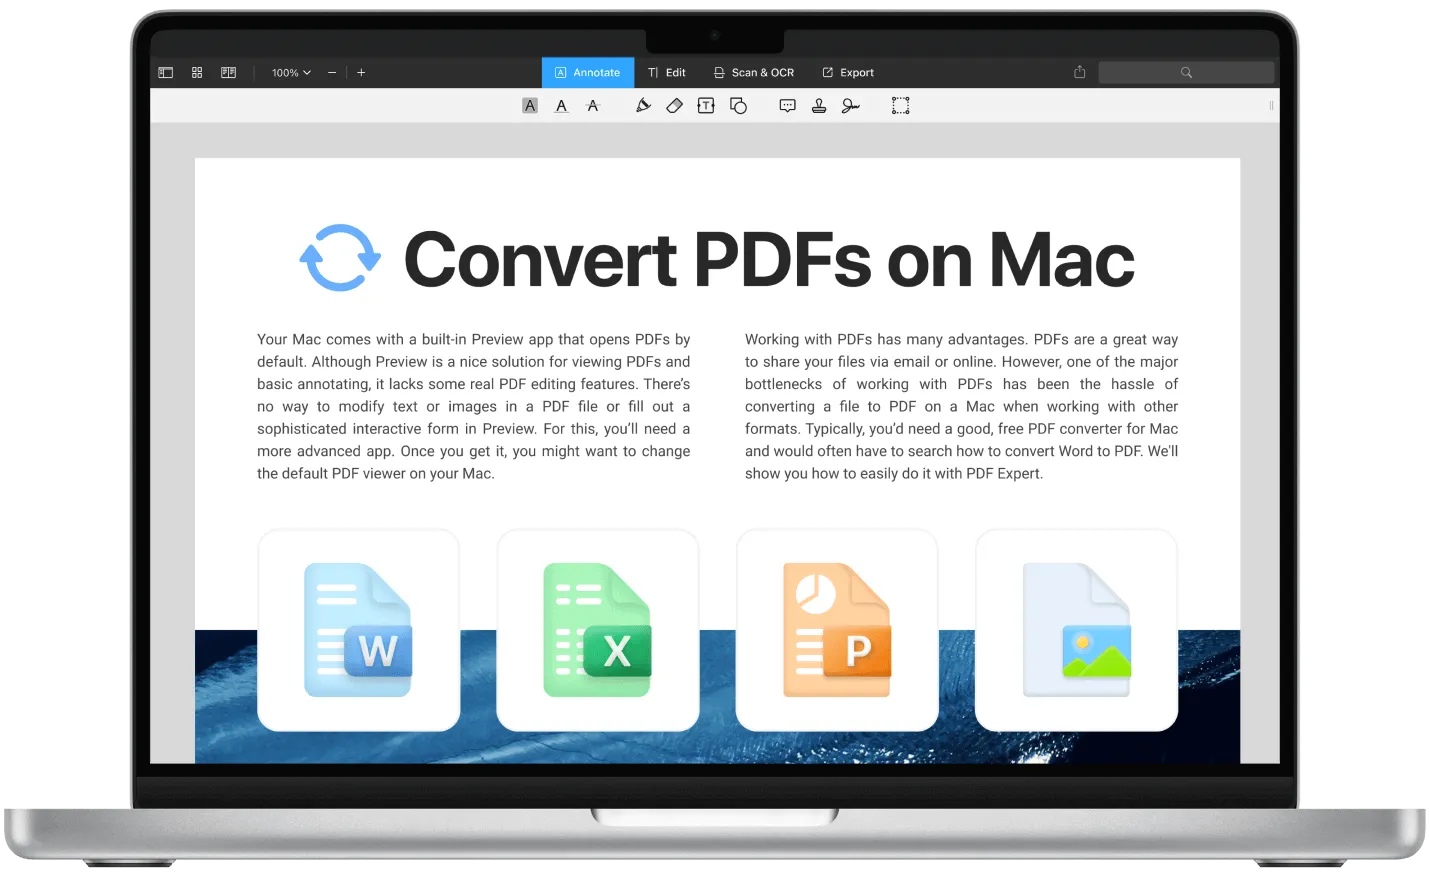 Conversor de PDF para Mac